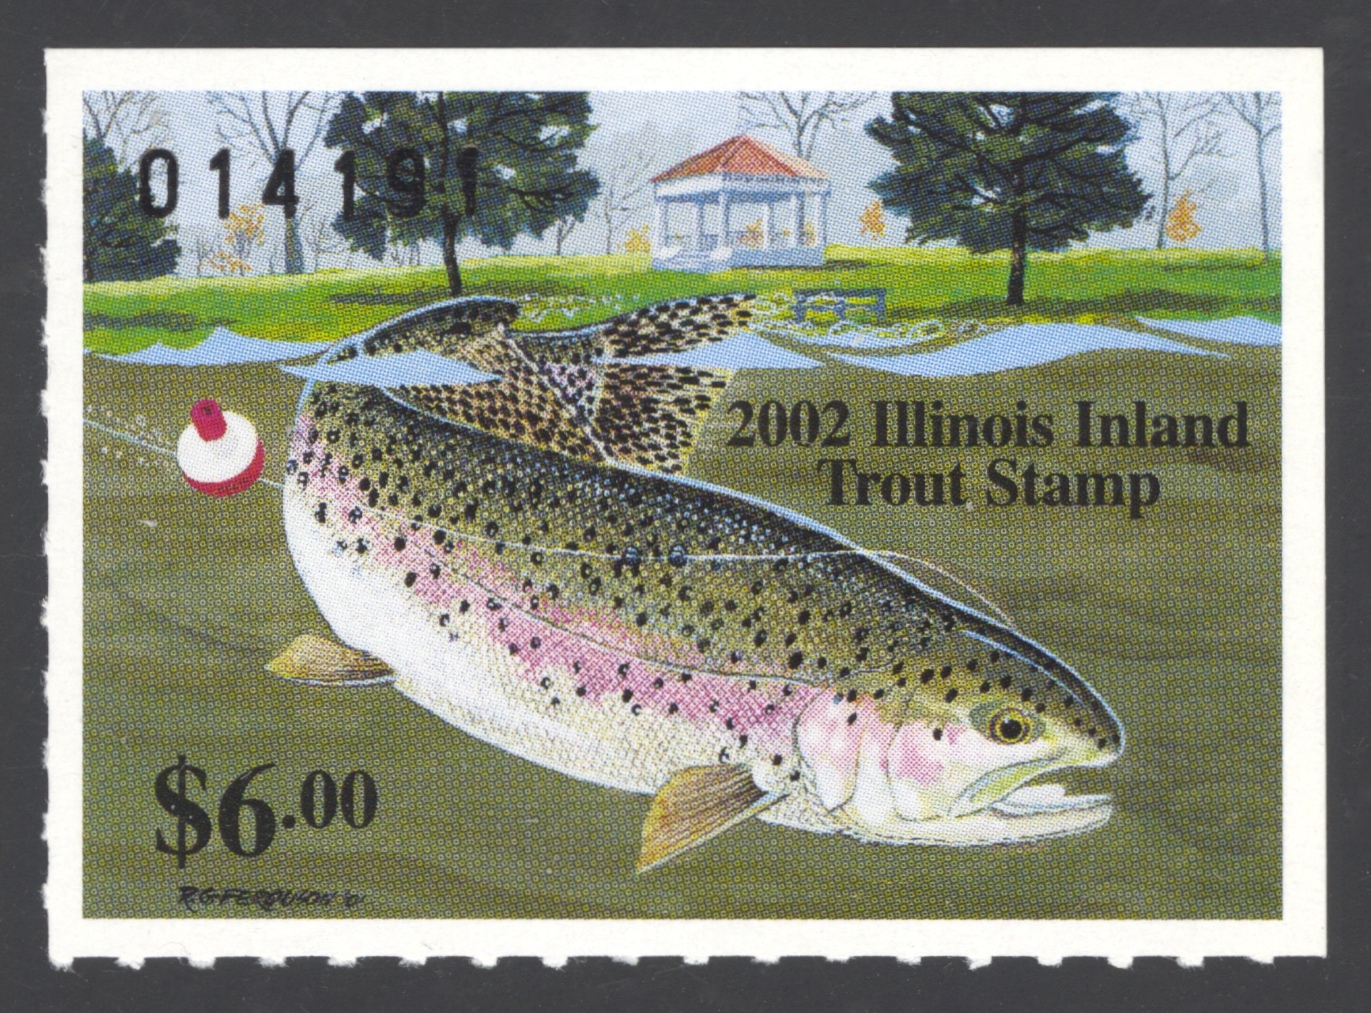 2002 Illinois Inland Tout